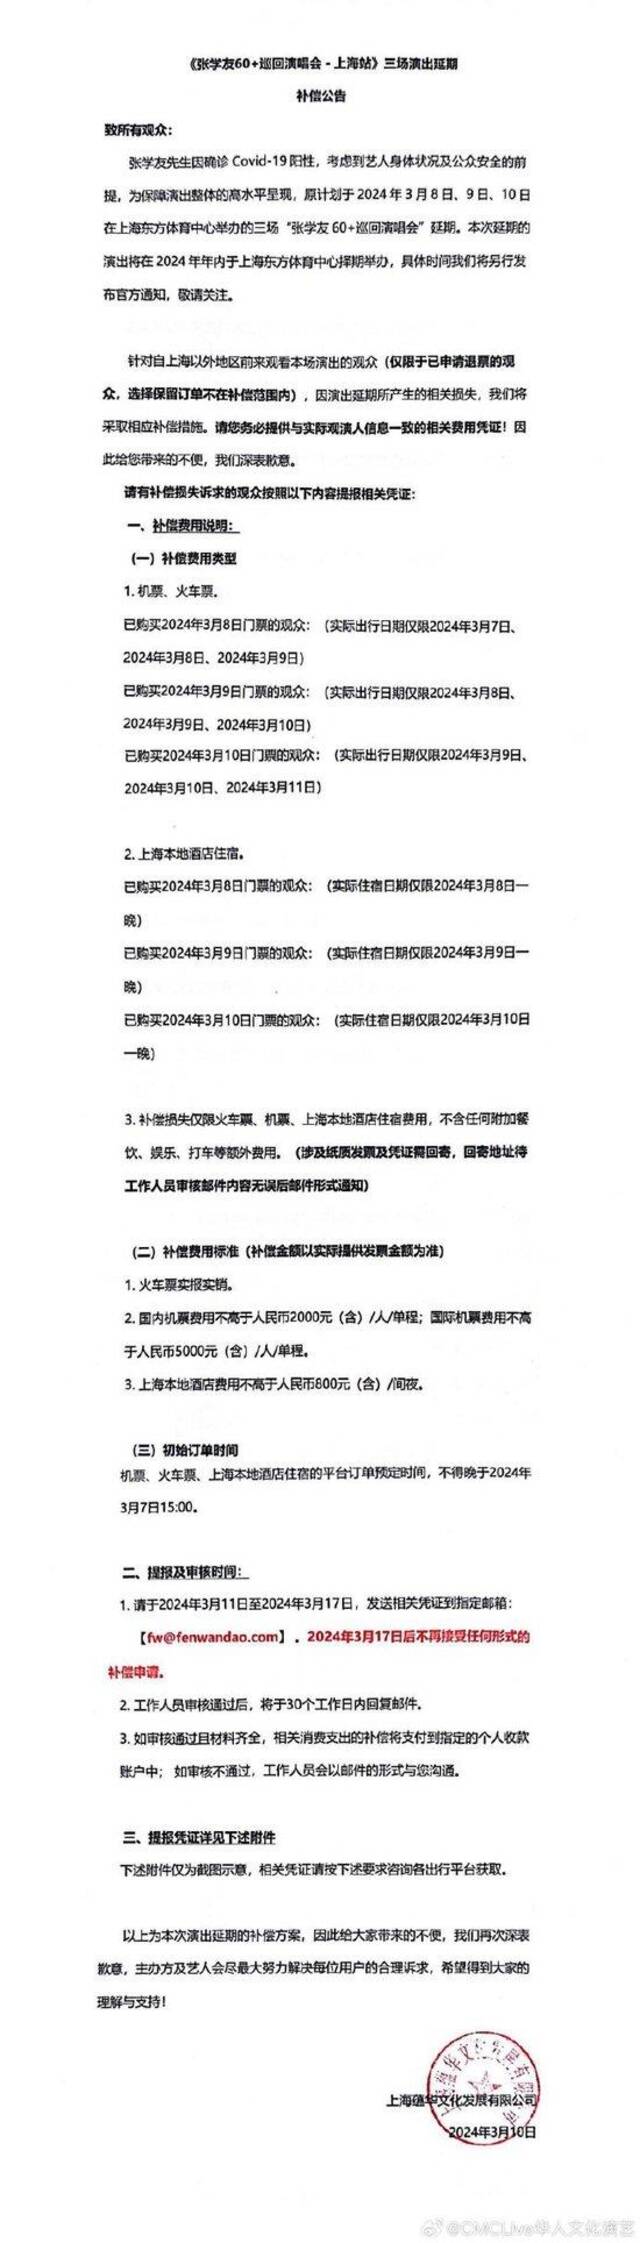 《张学友60+巡回演唱会-上海站》三场演出延期及补偿方案公布